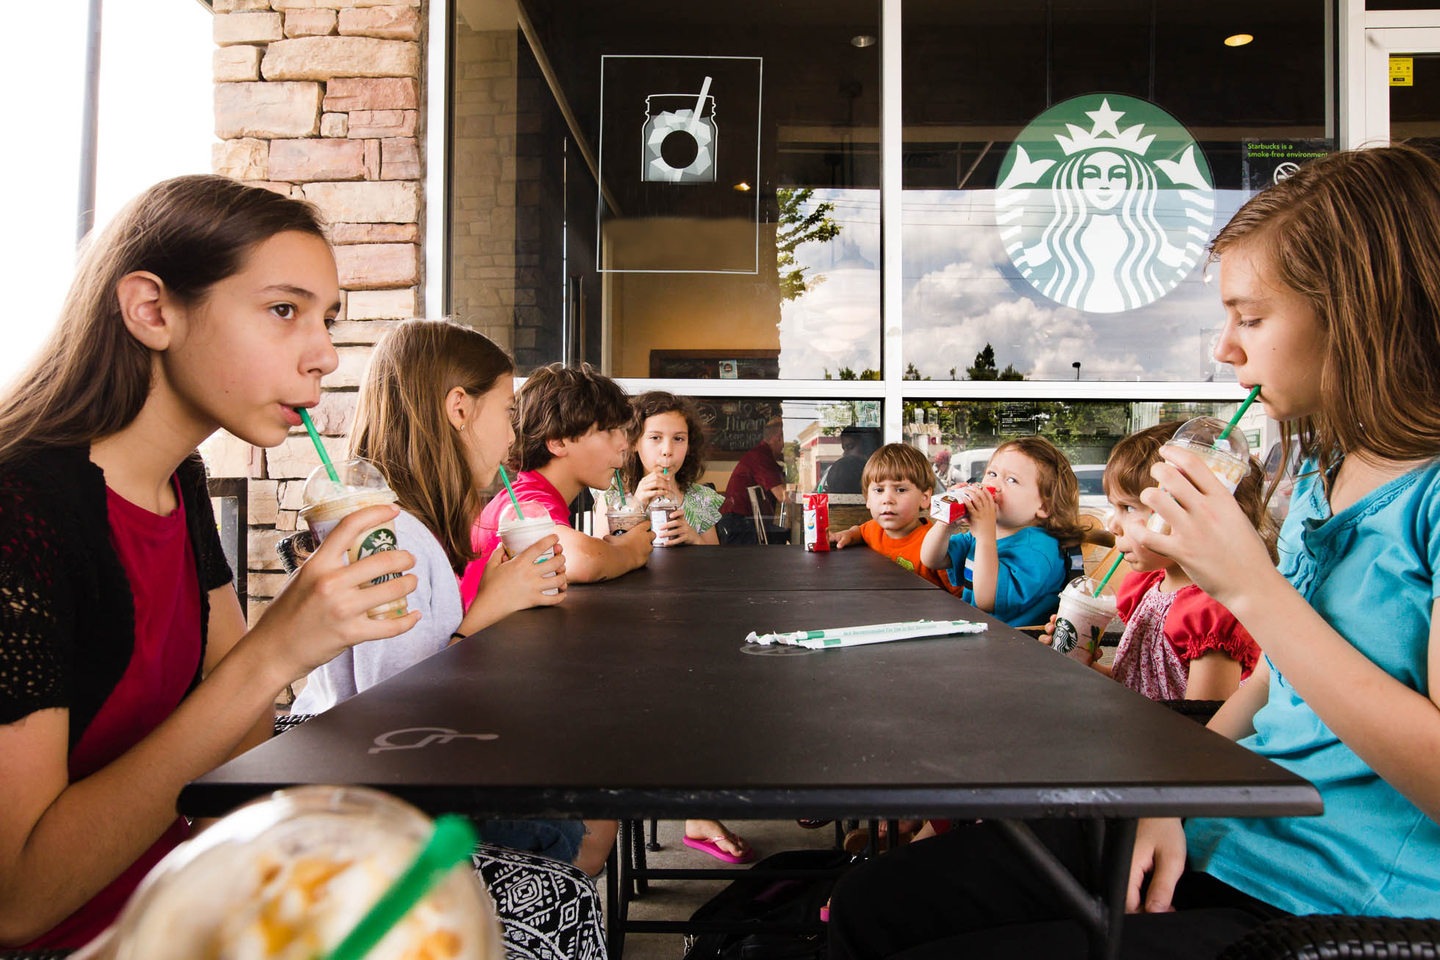 Может ли администрация выгнать детей из кафе «за плохое поведение»?